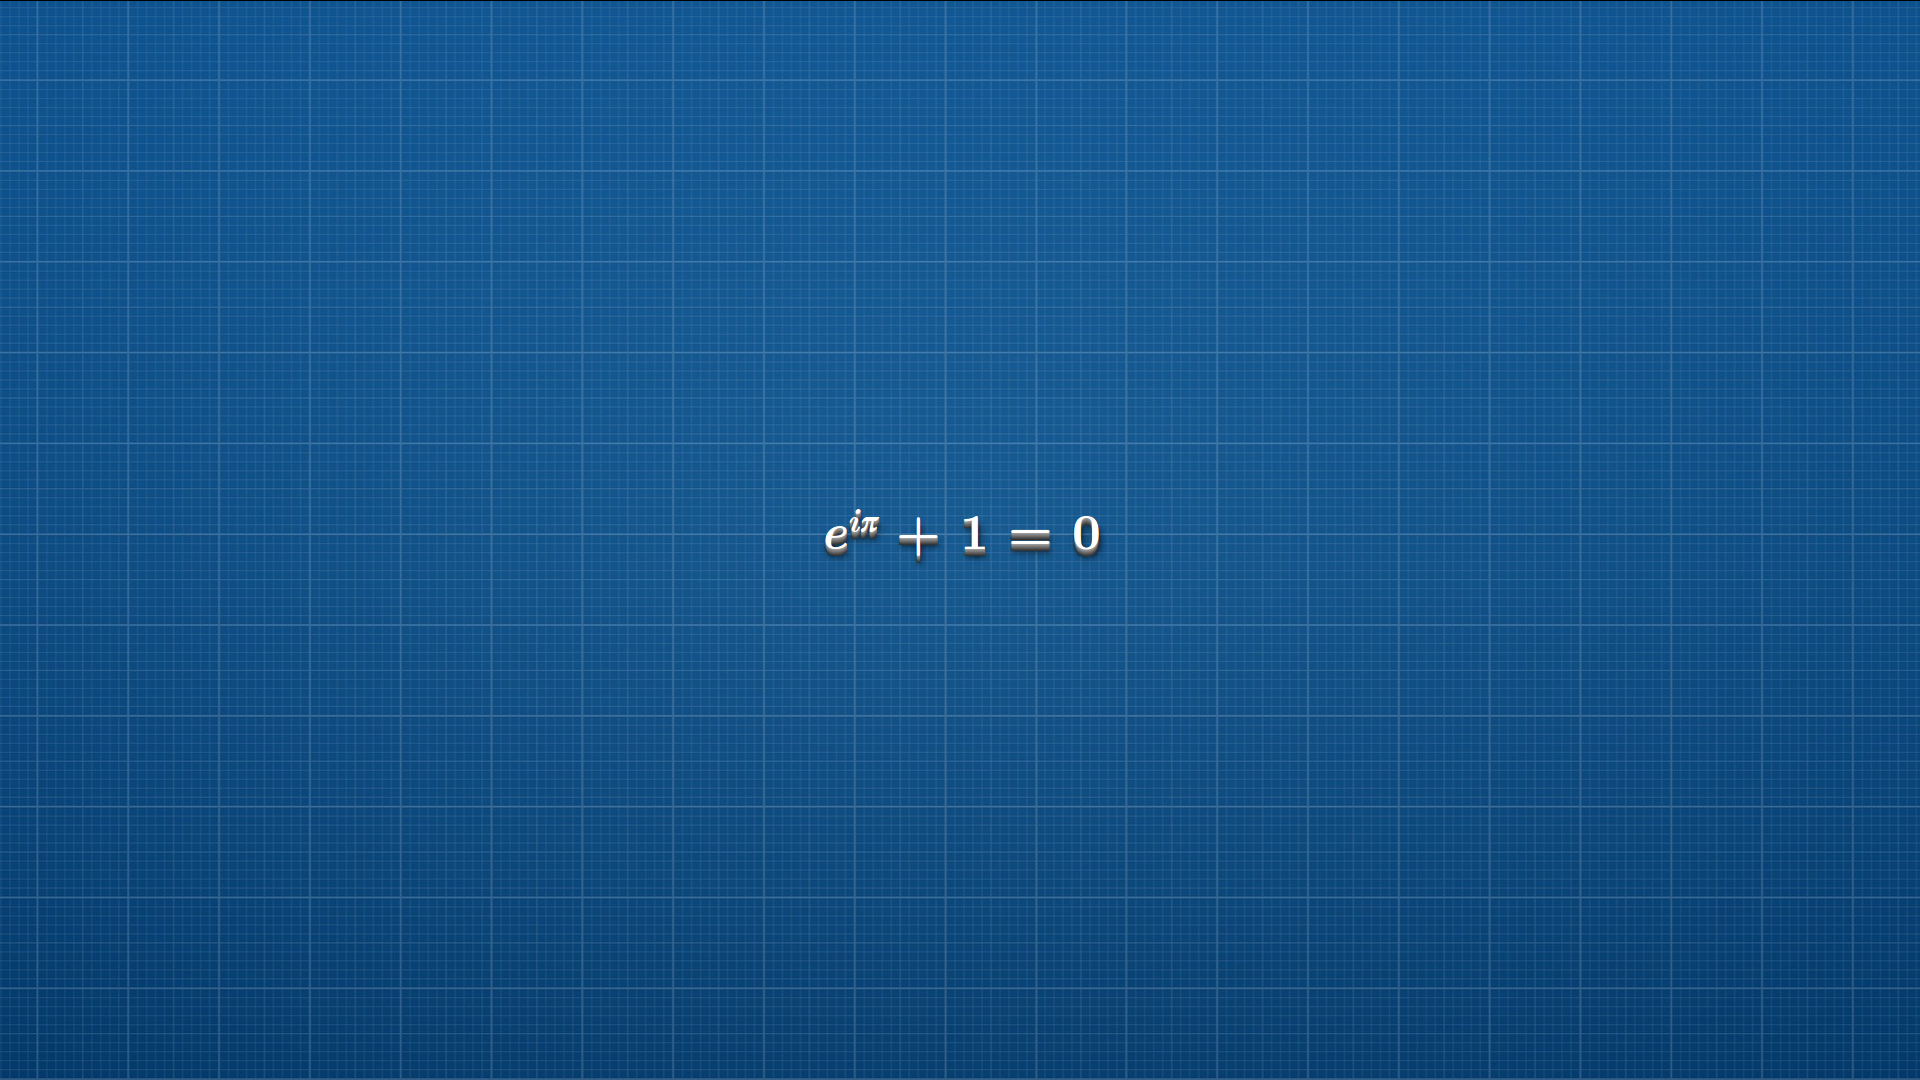 General 1920x1080 blueprints equation formula blue background lines